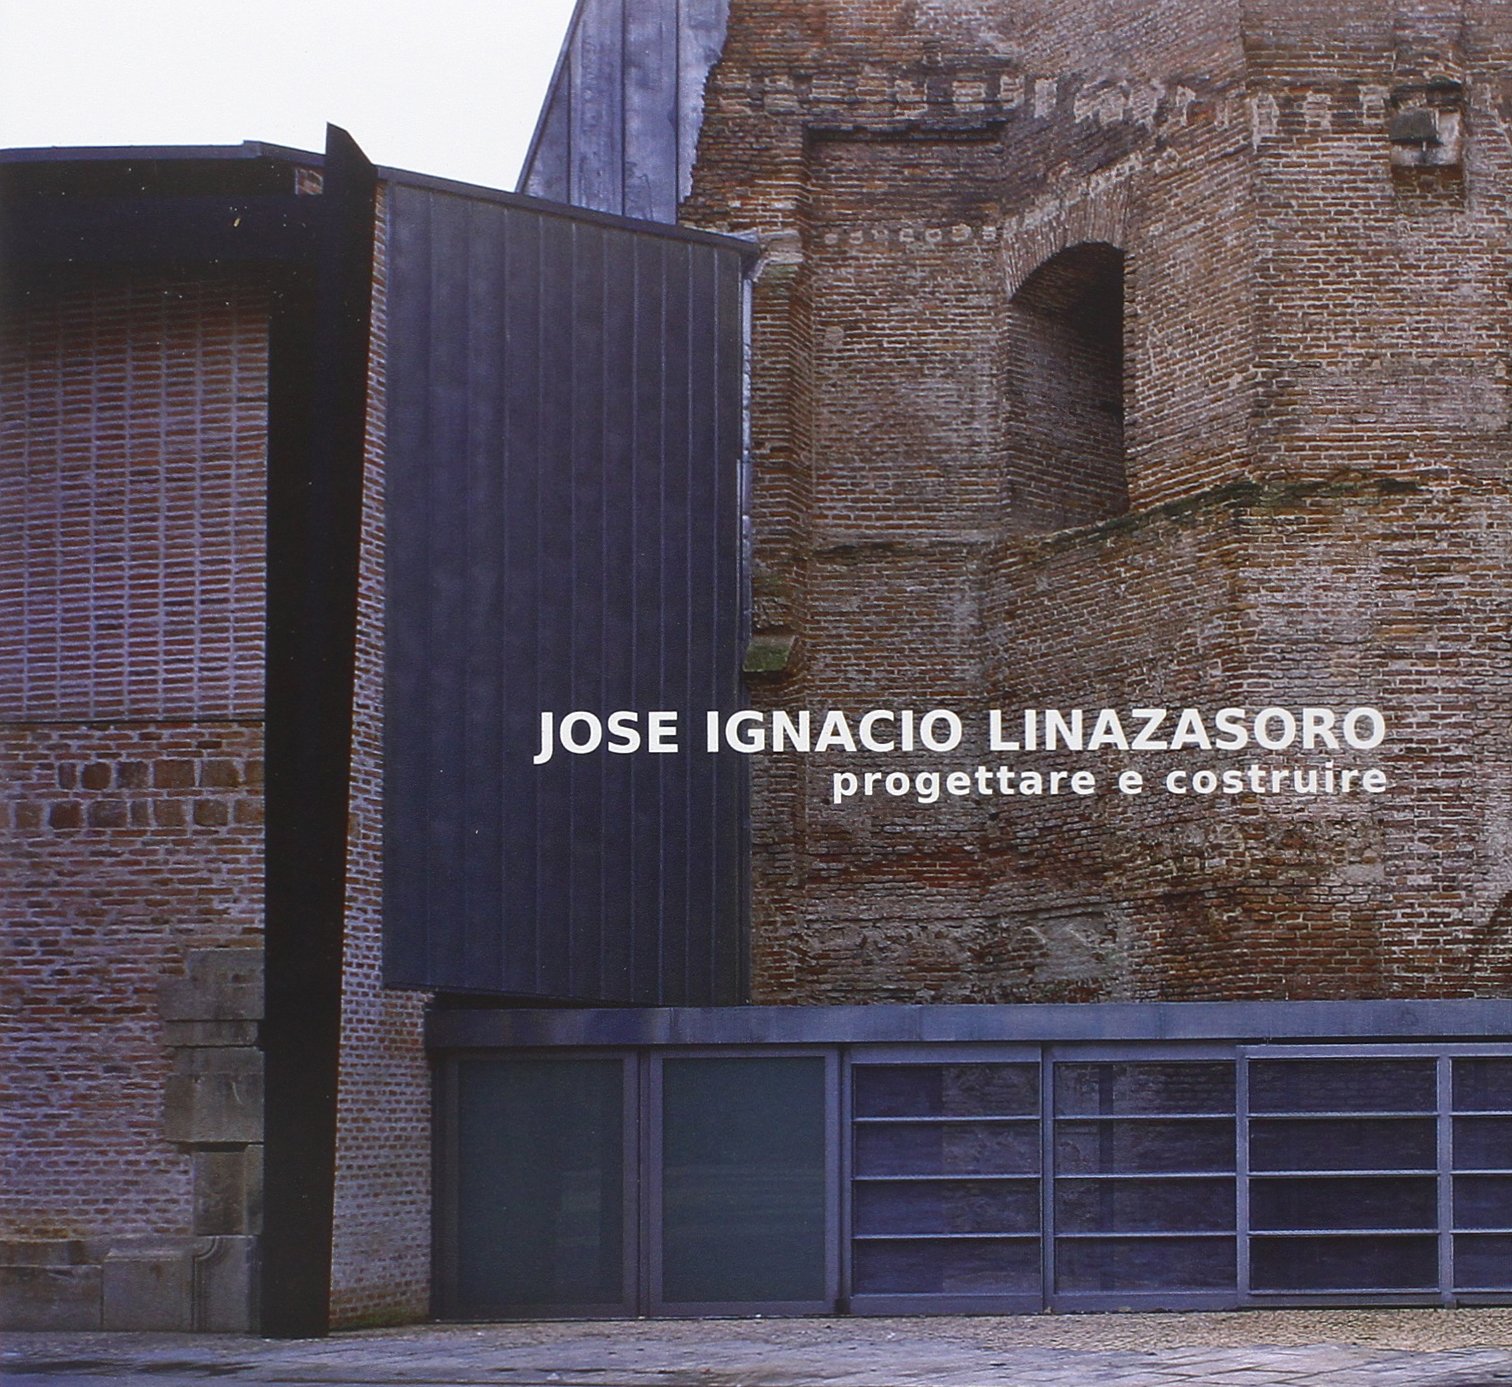 Jose Ignacio Linazasoro Progettare e costruire